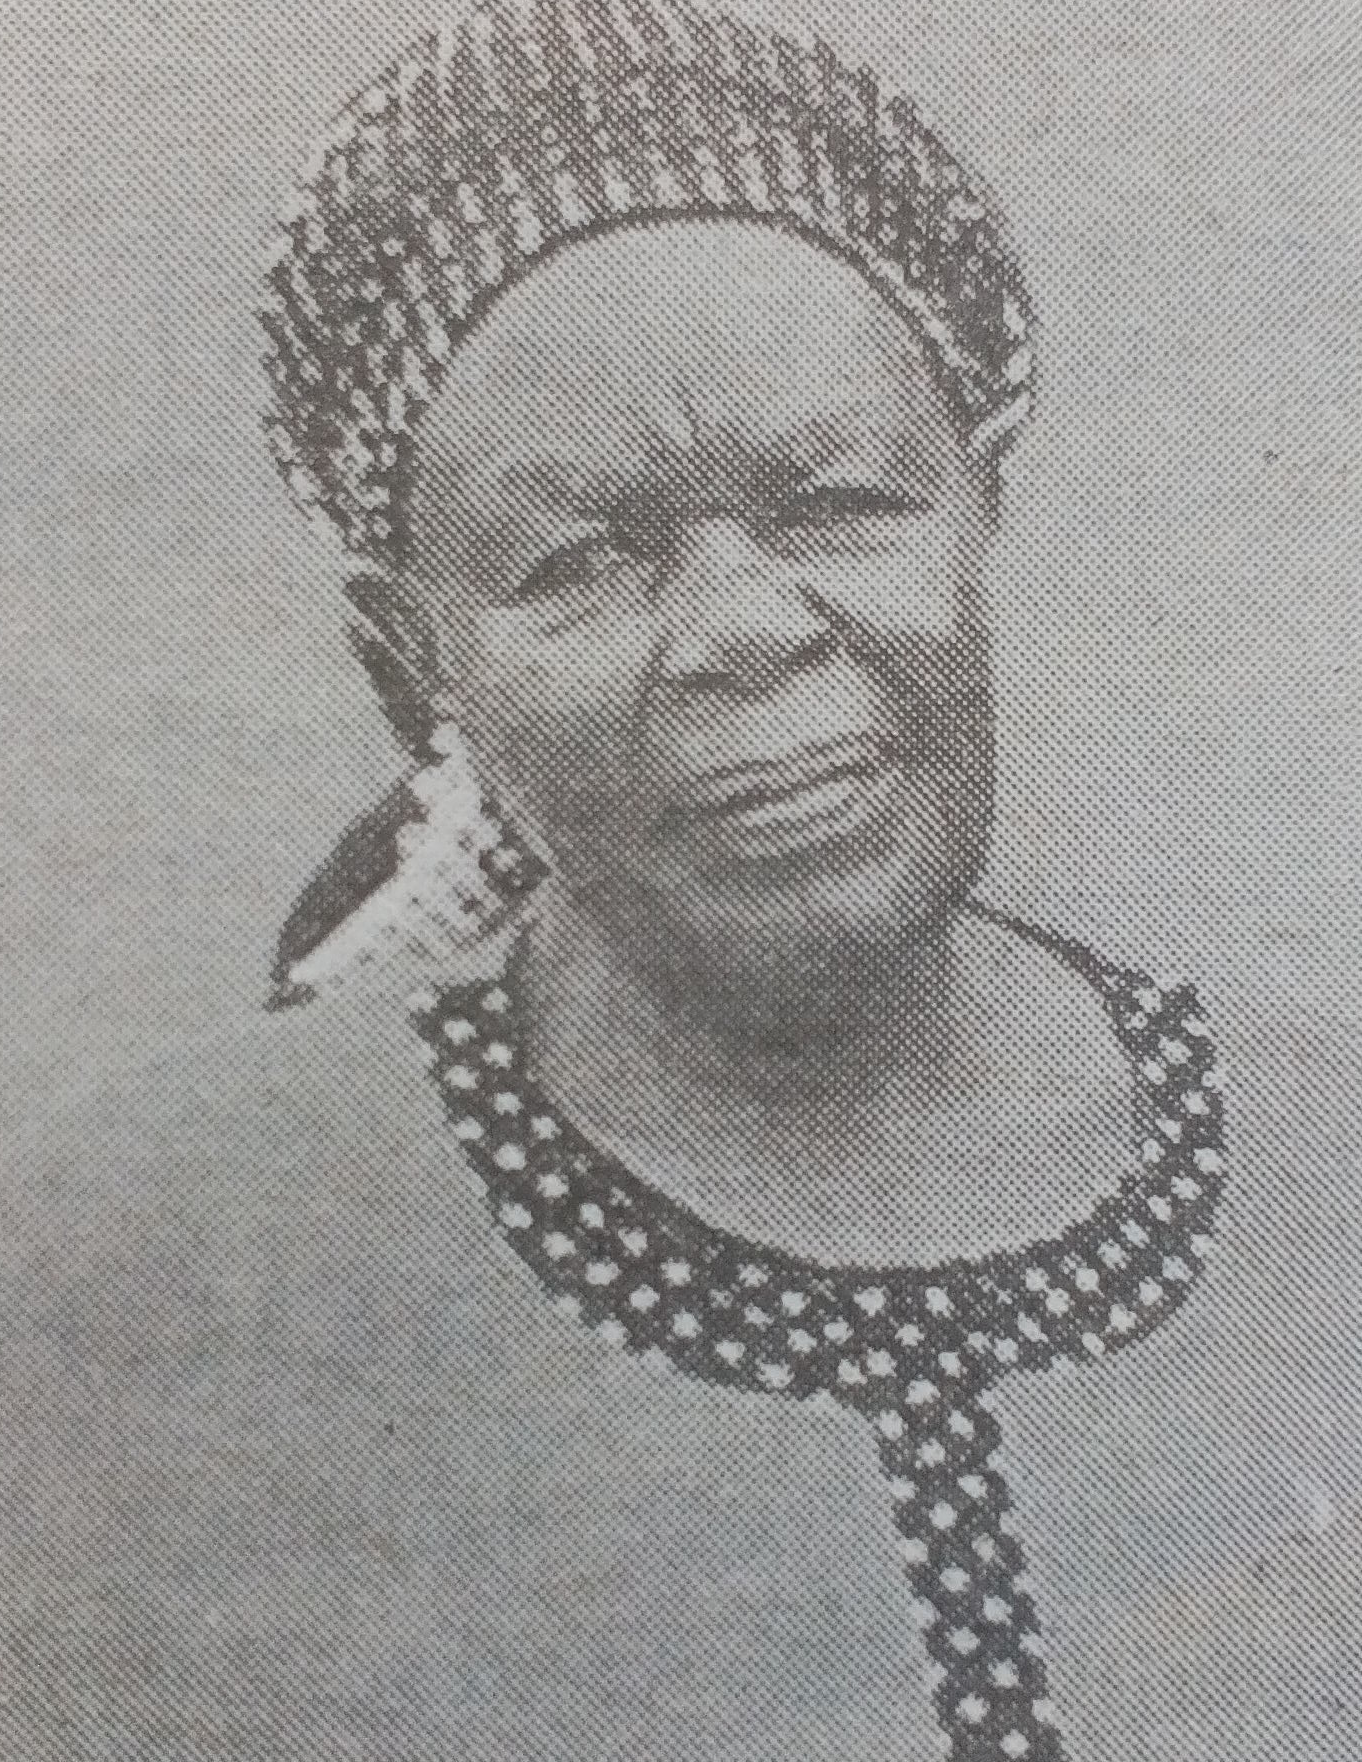 Obituary Image of Norah Moraa Nyarnamba